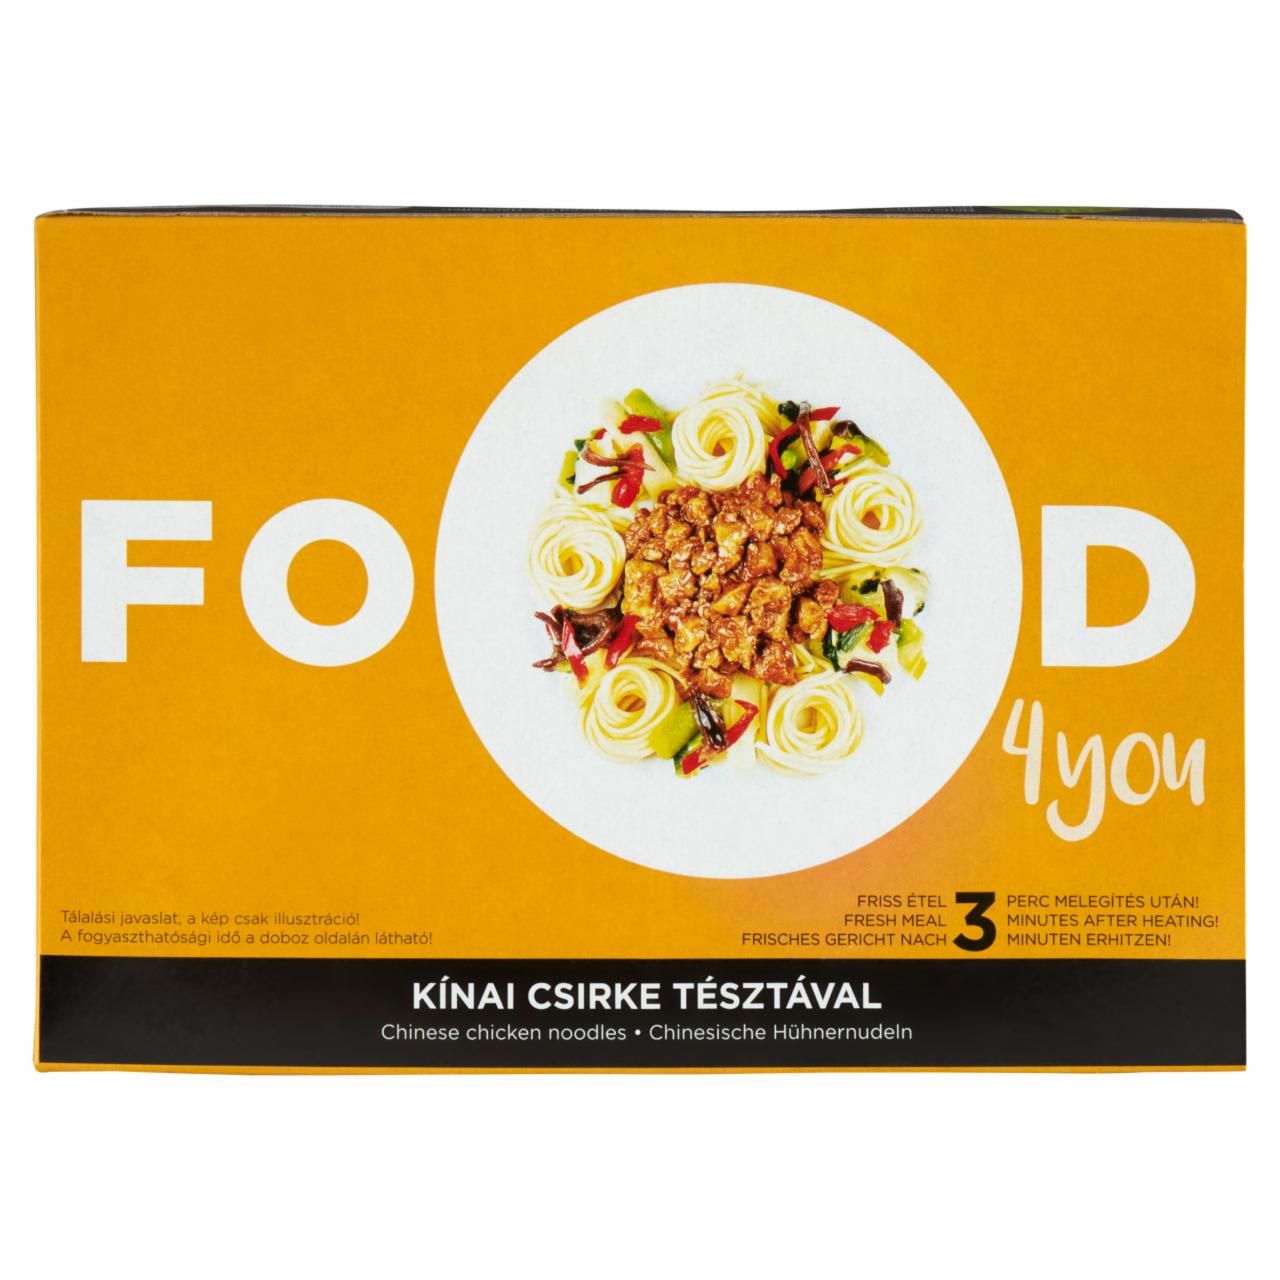 Képek - Food 4 You kínai csirke tésztával 350 g